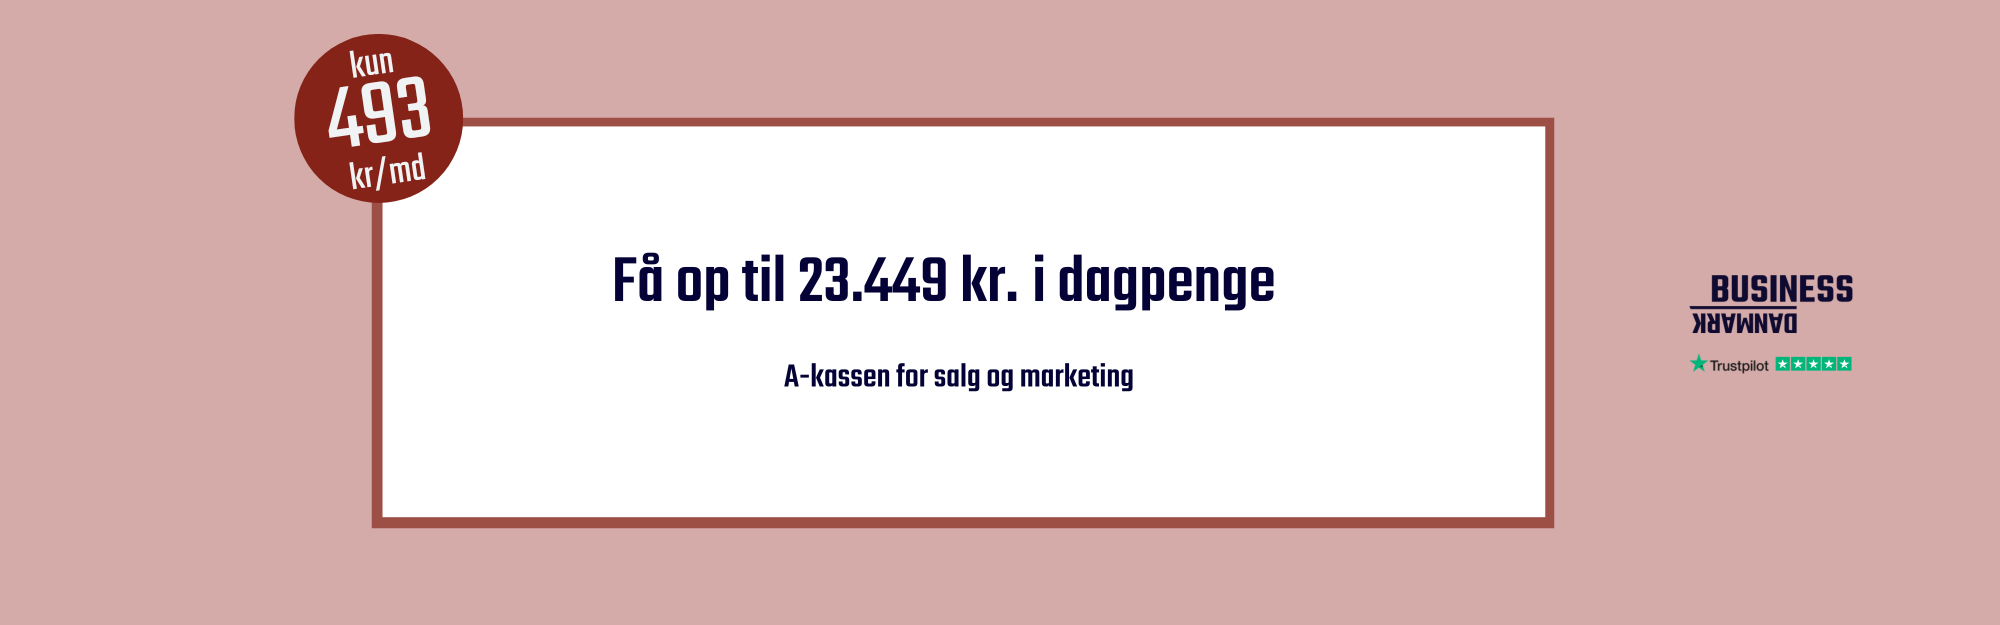 Business Danmark er fagforening og a-kasse for alle med interesse for salg, marketing og rådgivning. 